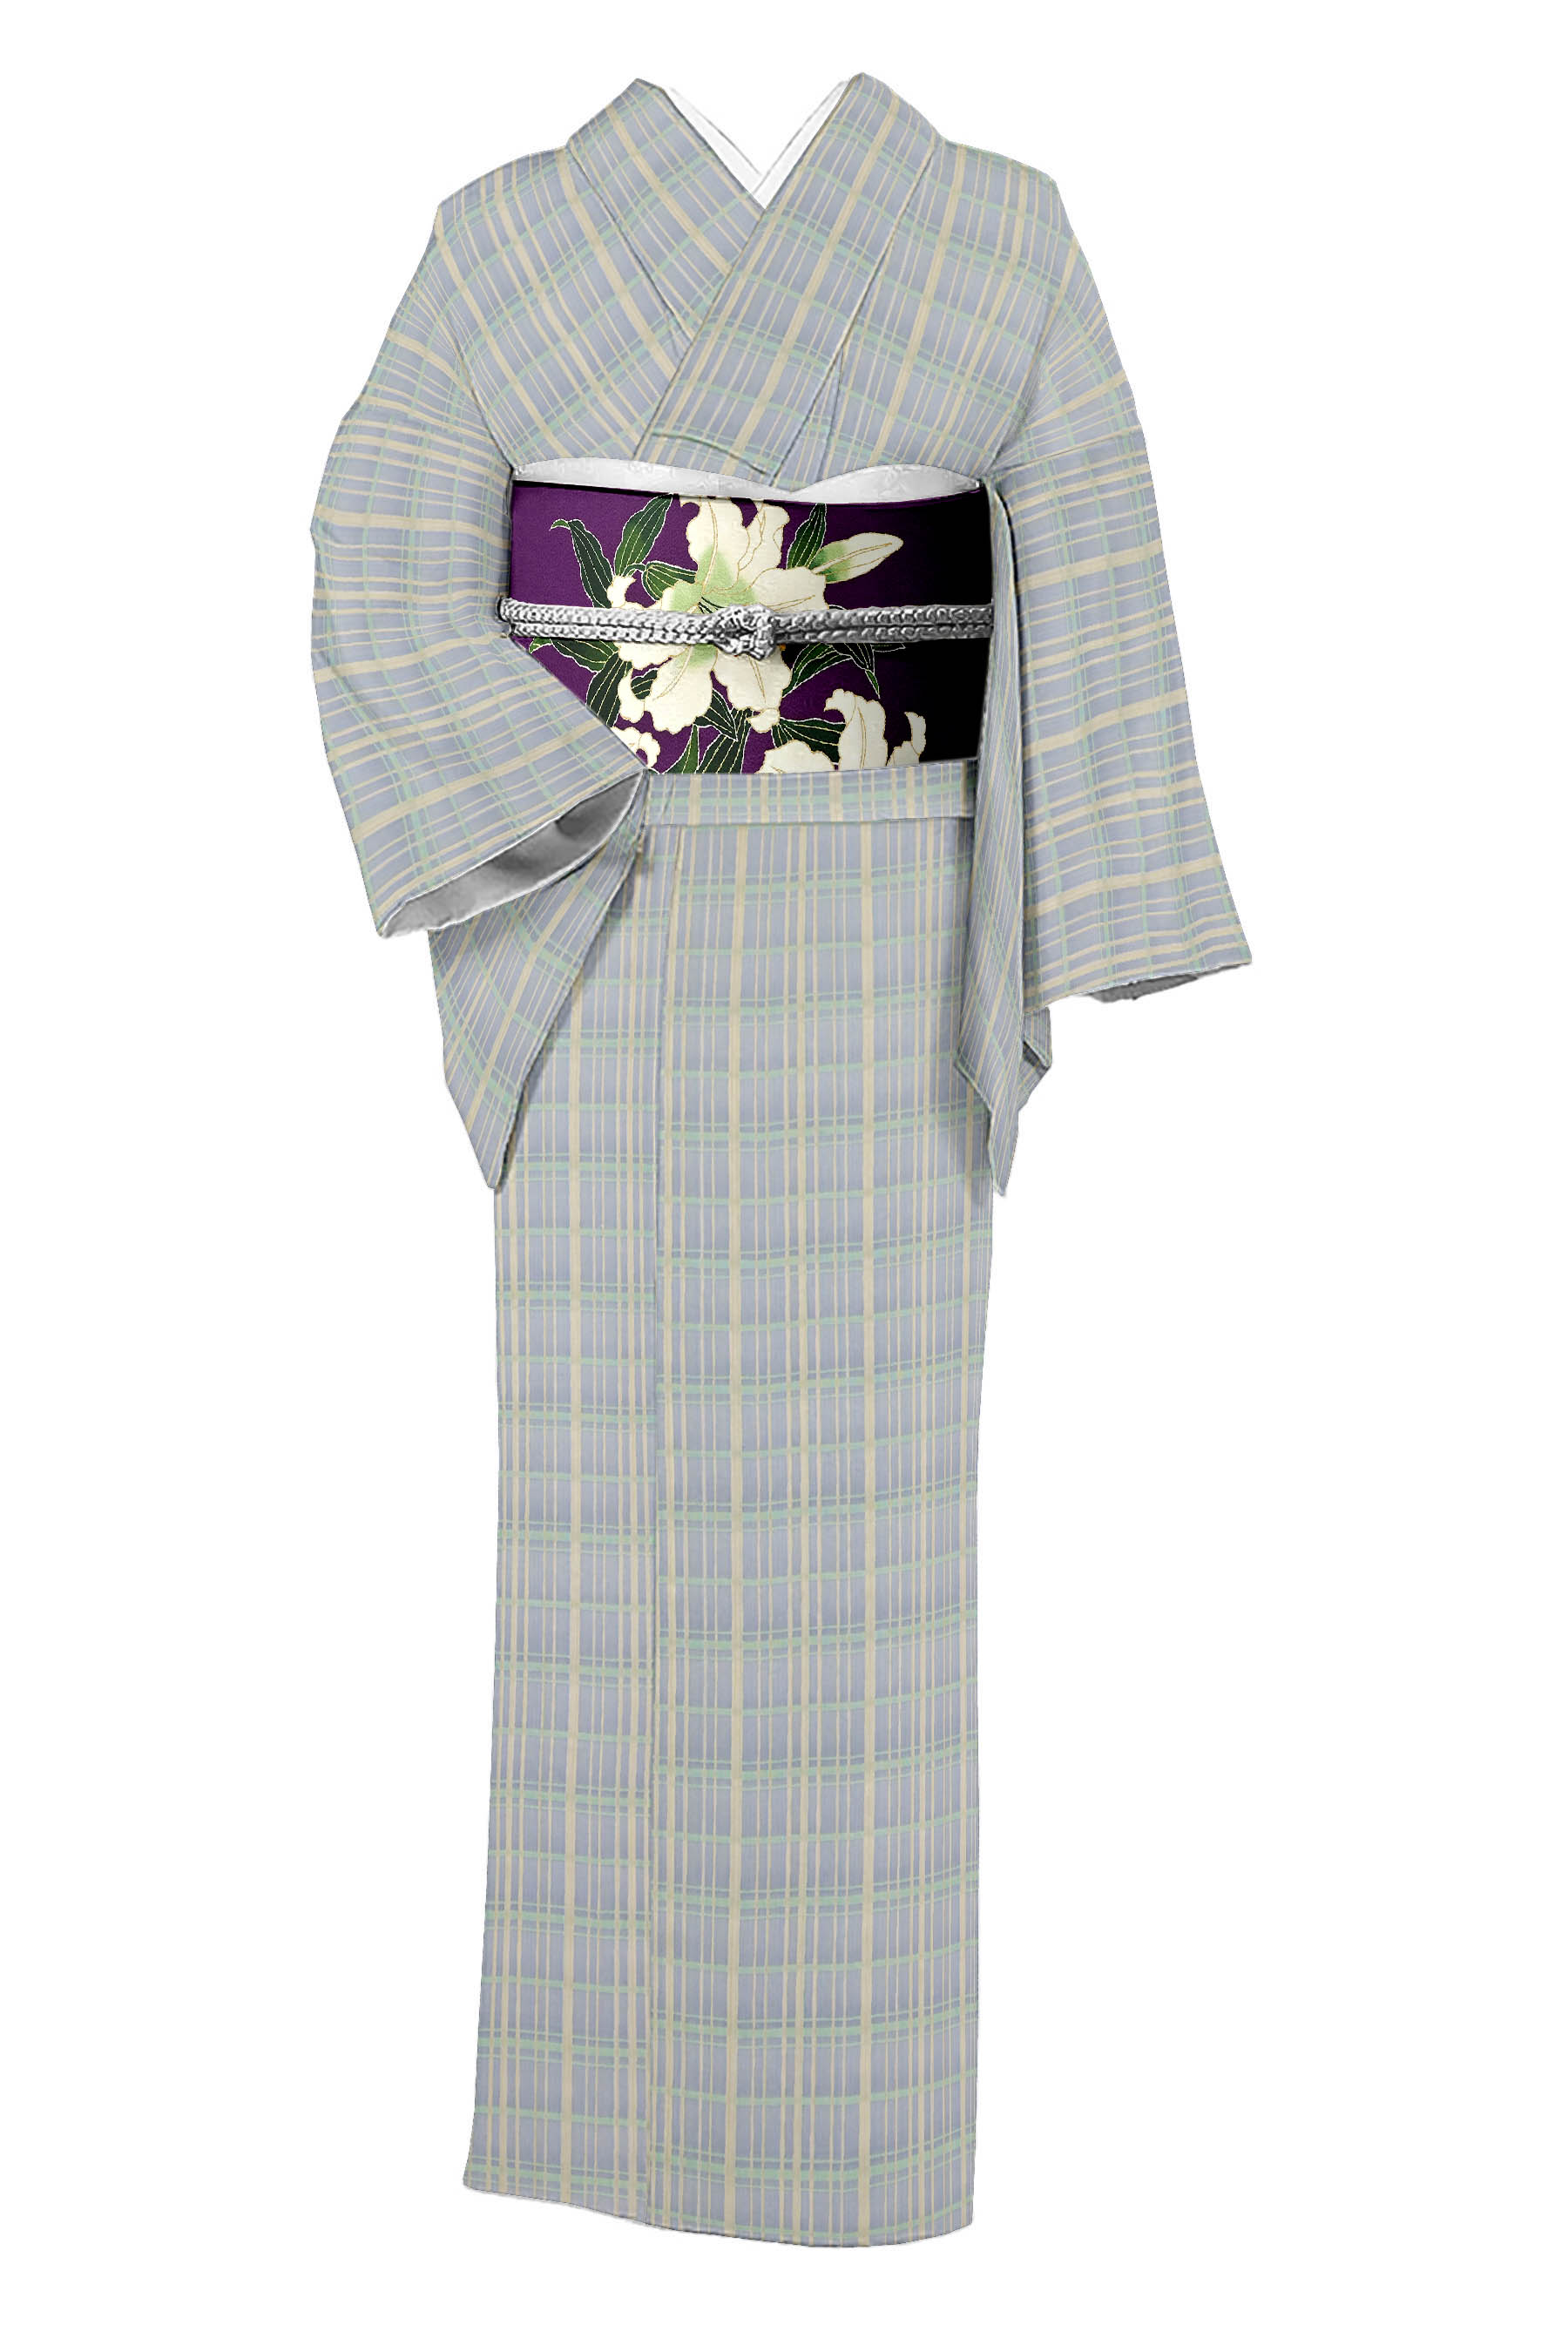 新田織物の着物・帯の一覧|京都きもの市場【日本最大級の着物通販 